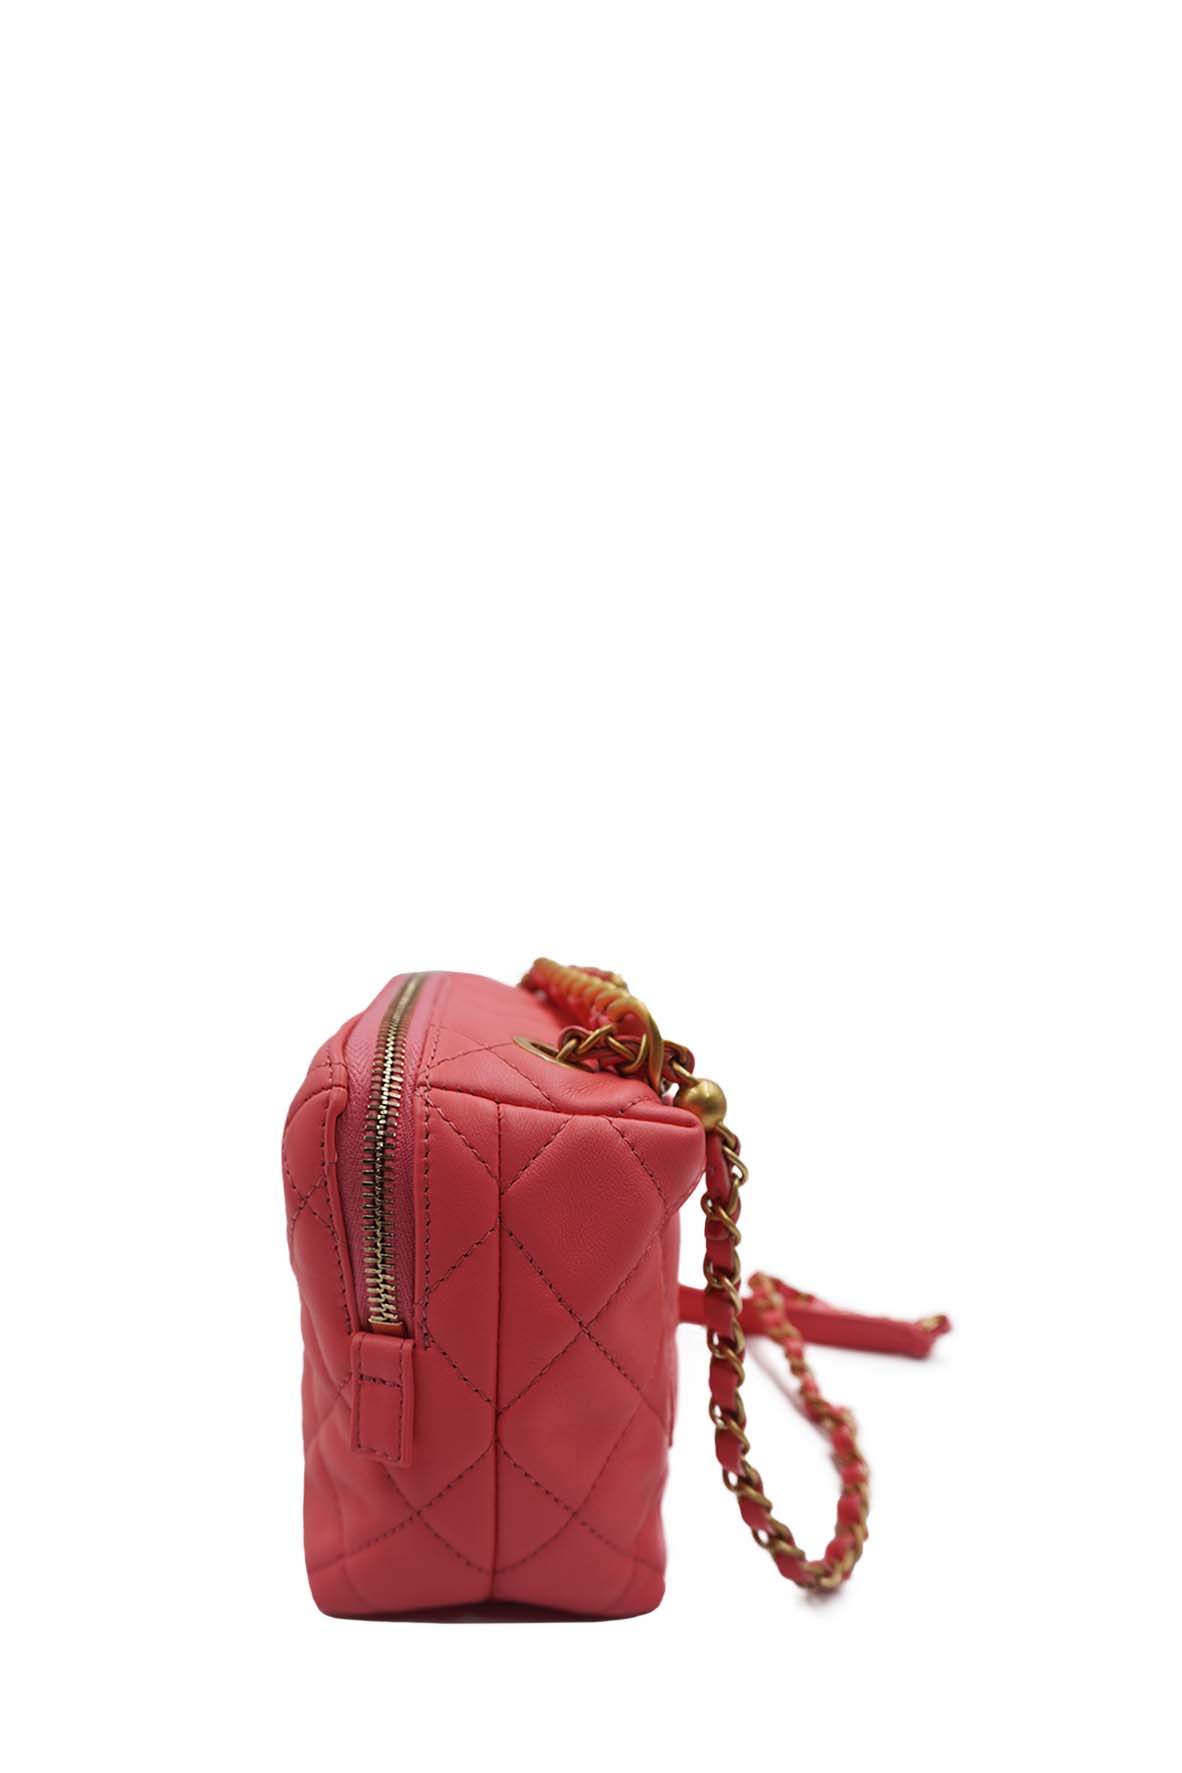 Chanel Melody Camera Bag